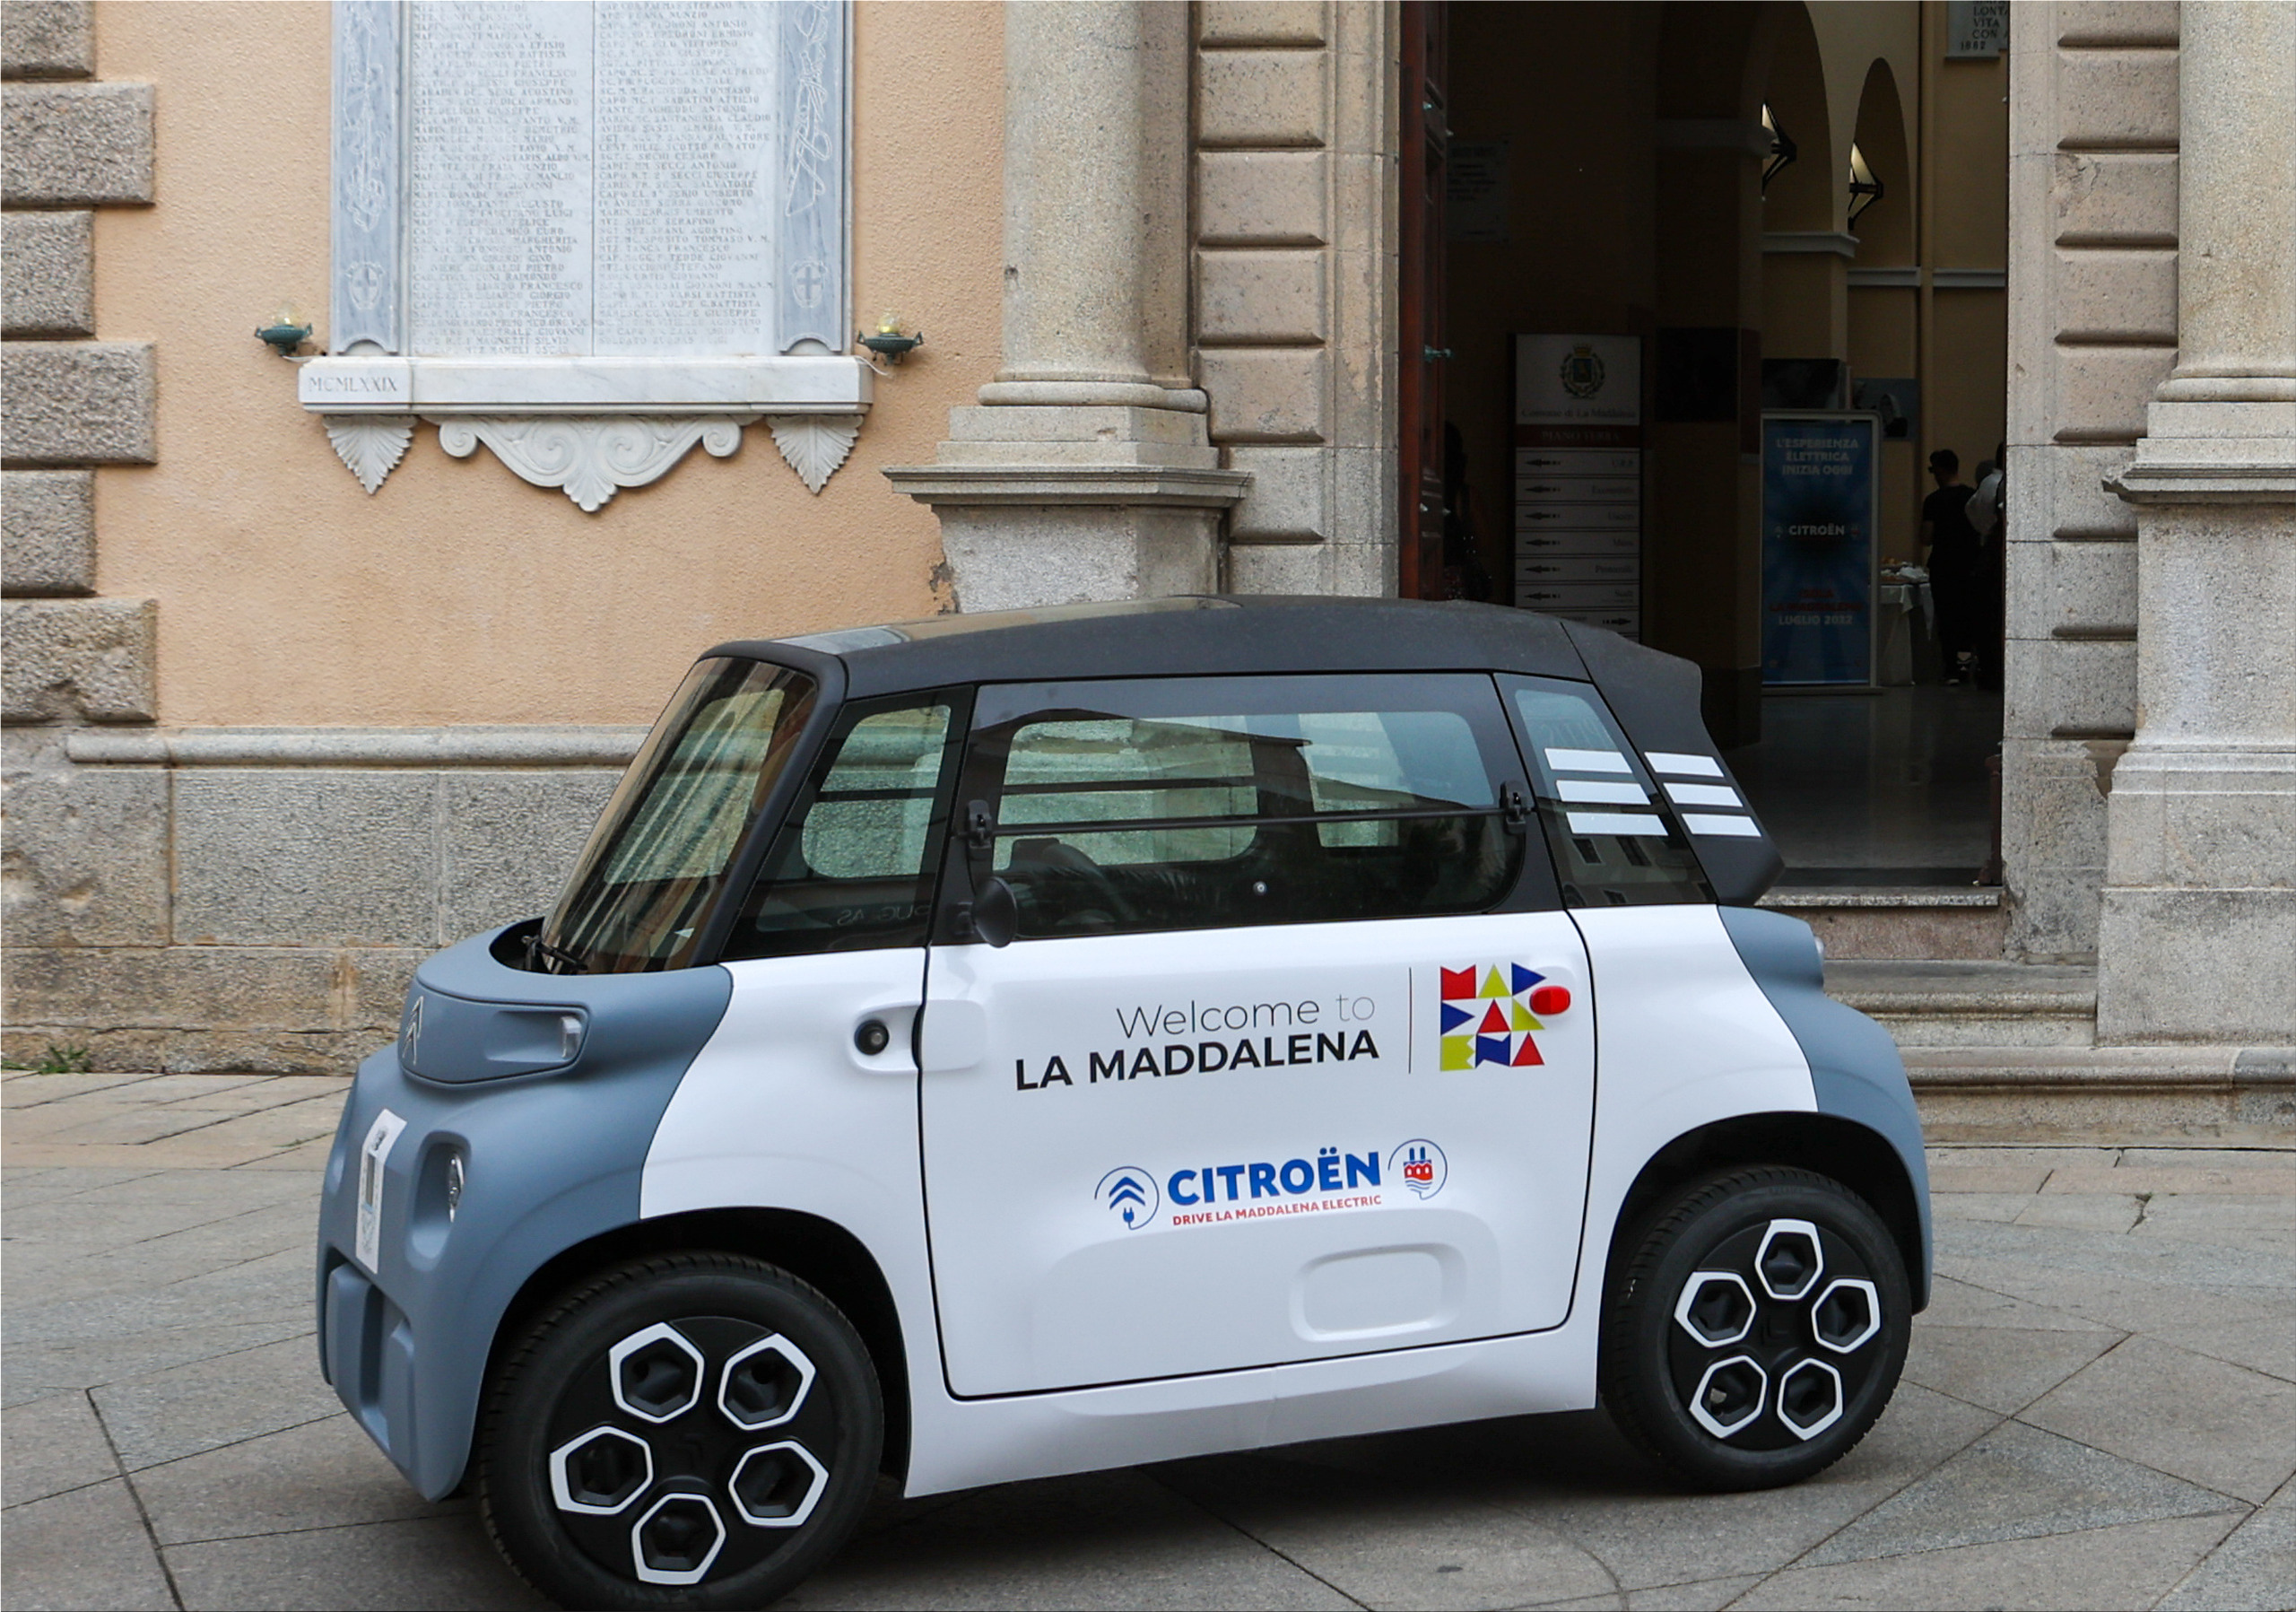 Melodieus Negen Verlichten Citroen is advocating for electric vehicles in Italy | Panorica